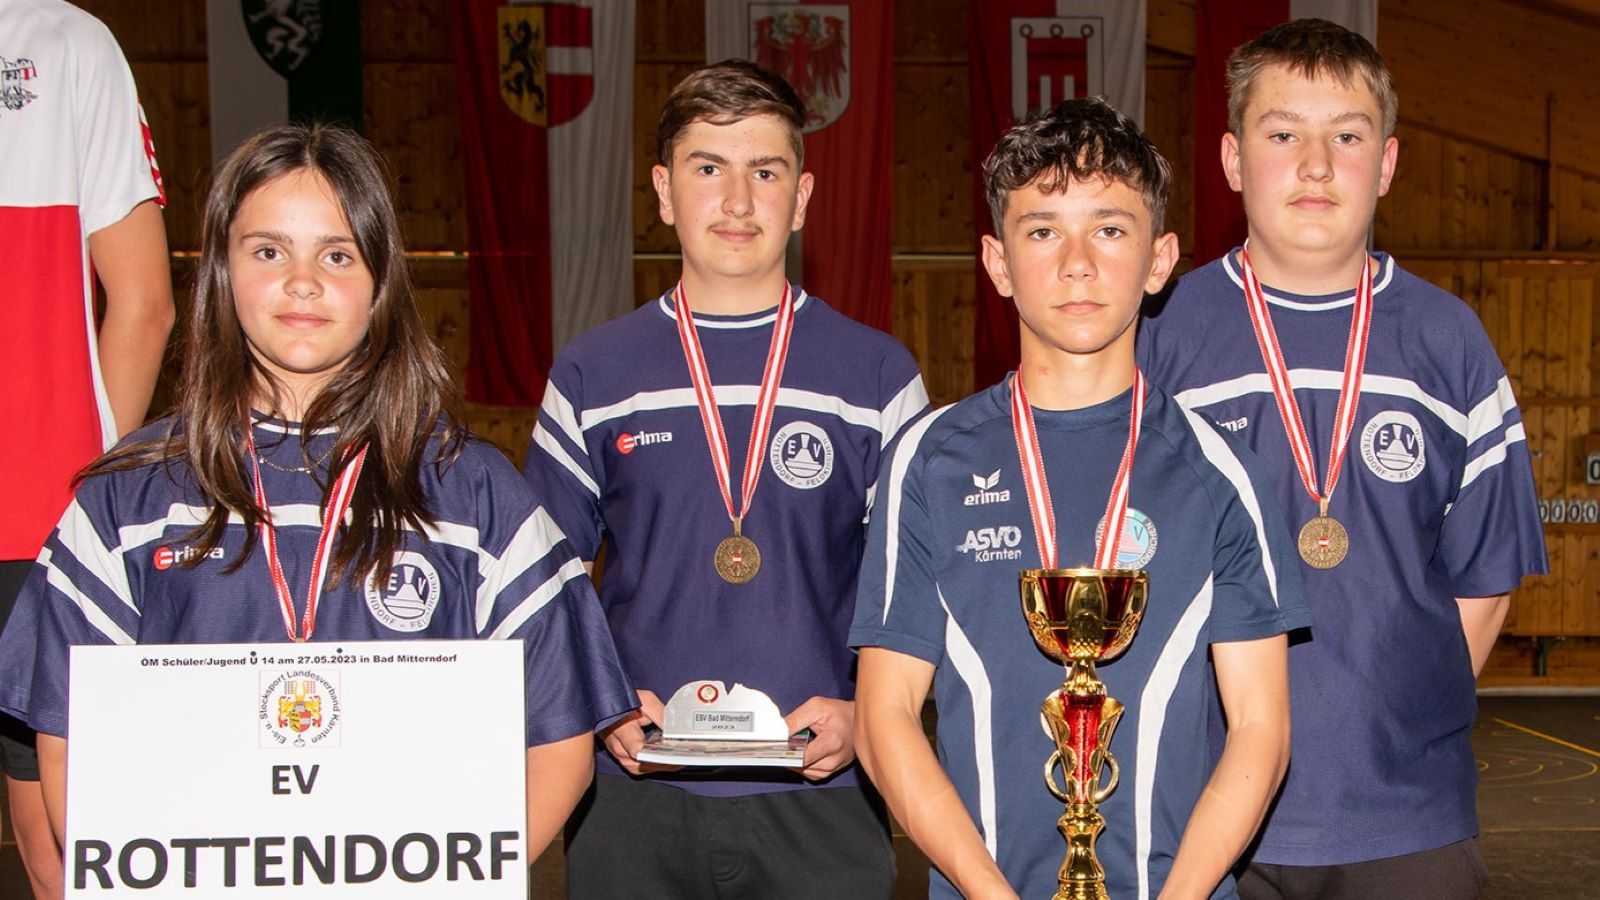 LV-Auswahl aus Oberösterreich gewinnt U14 ÖM